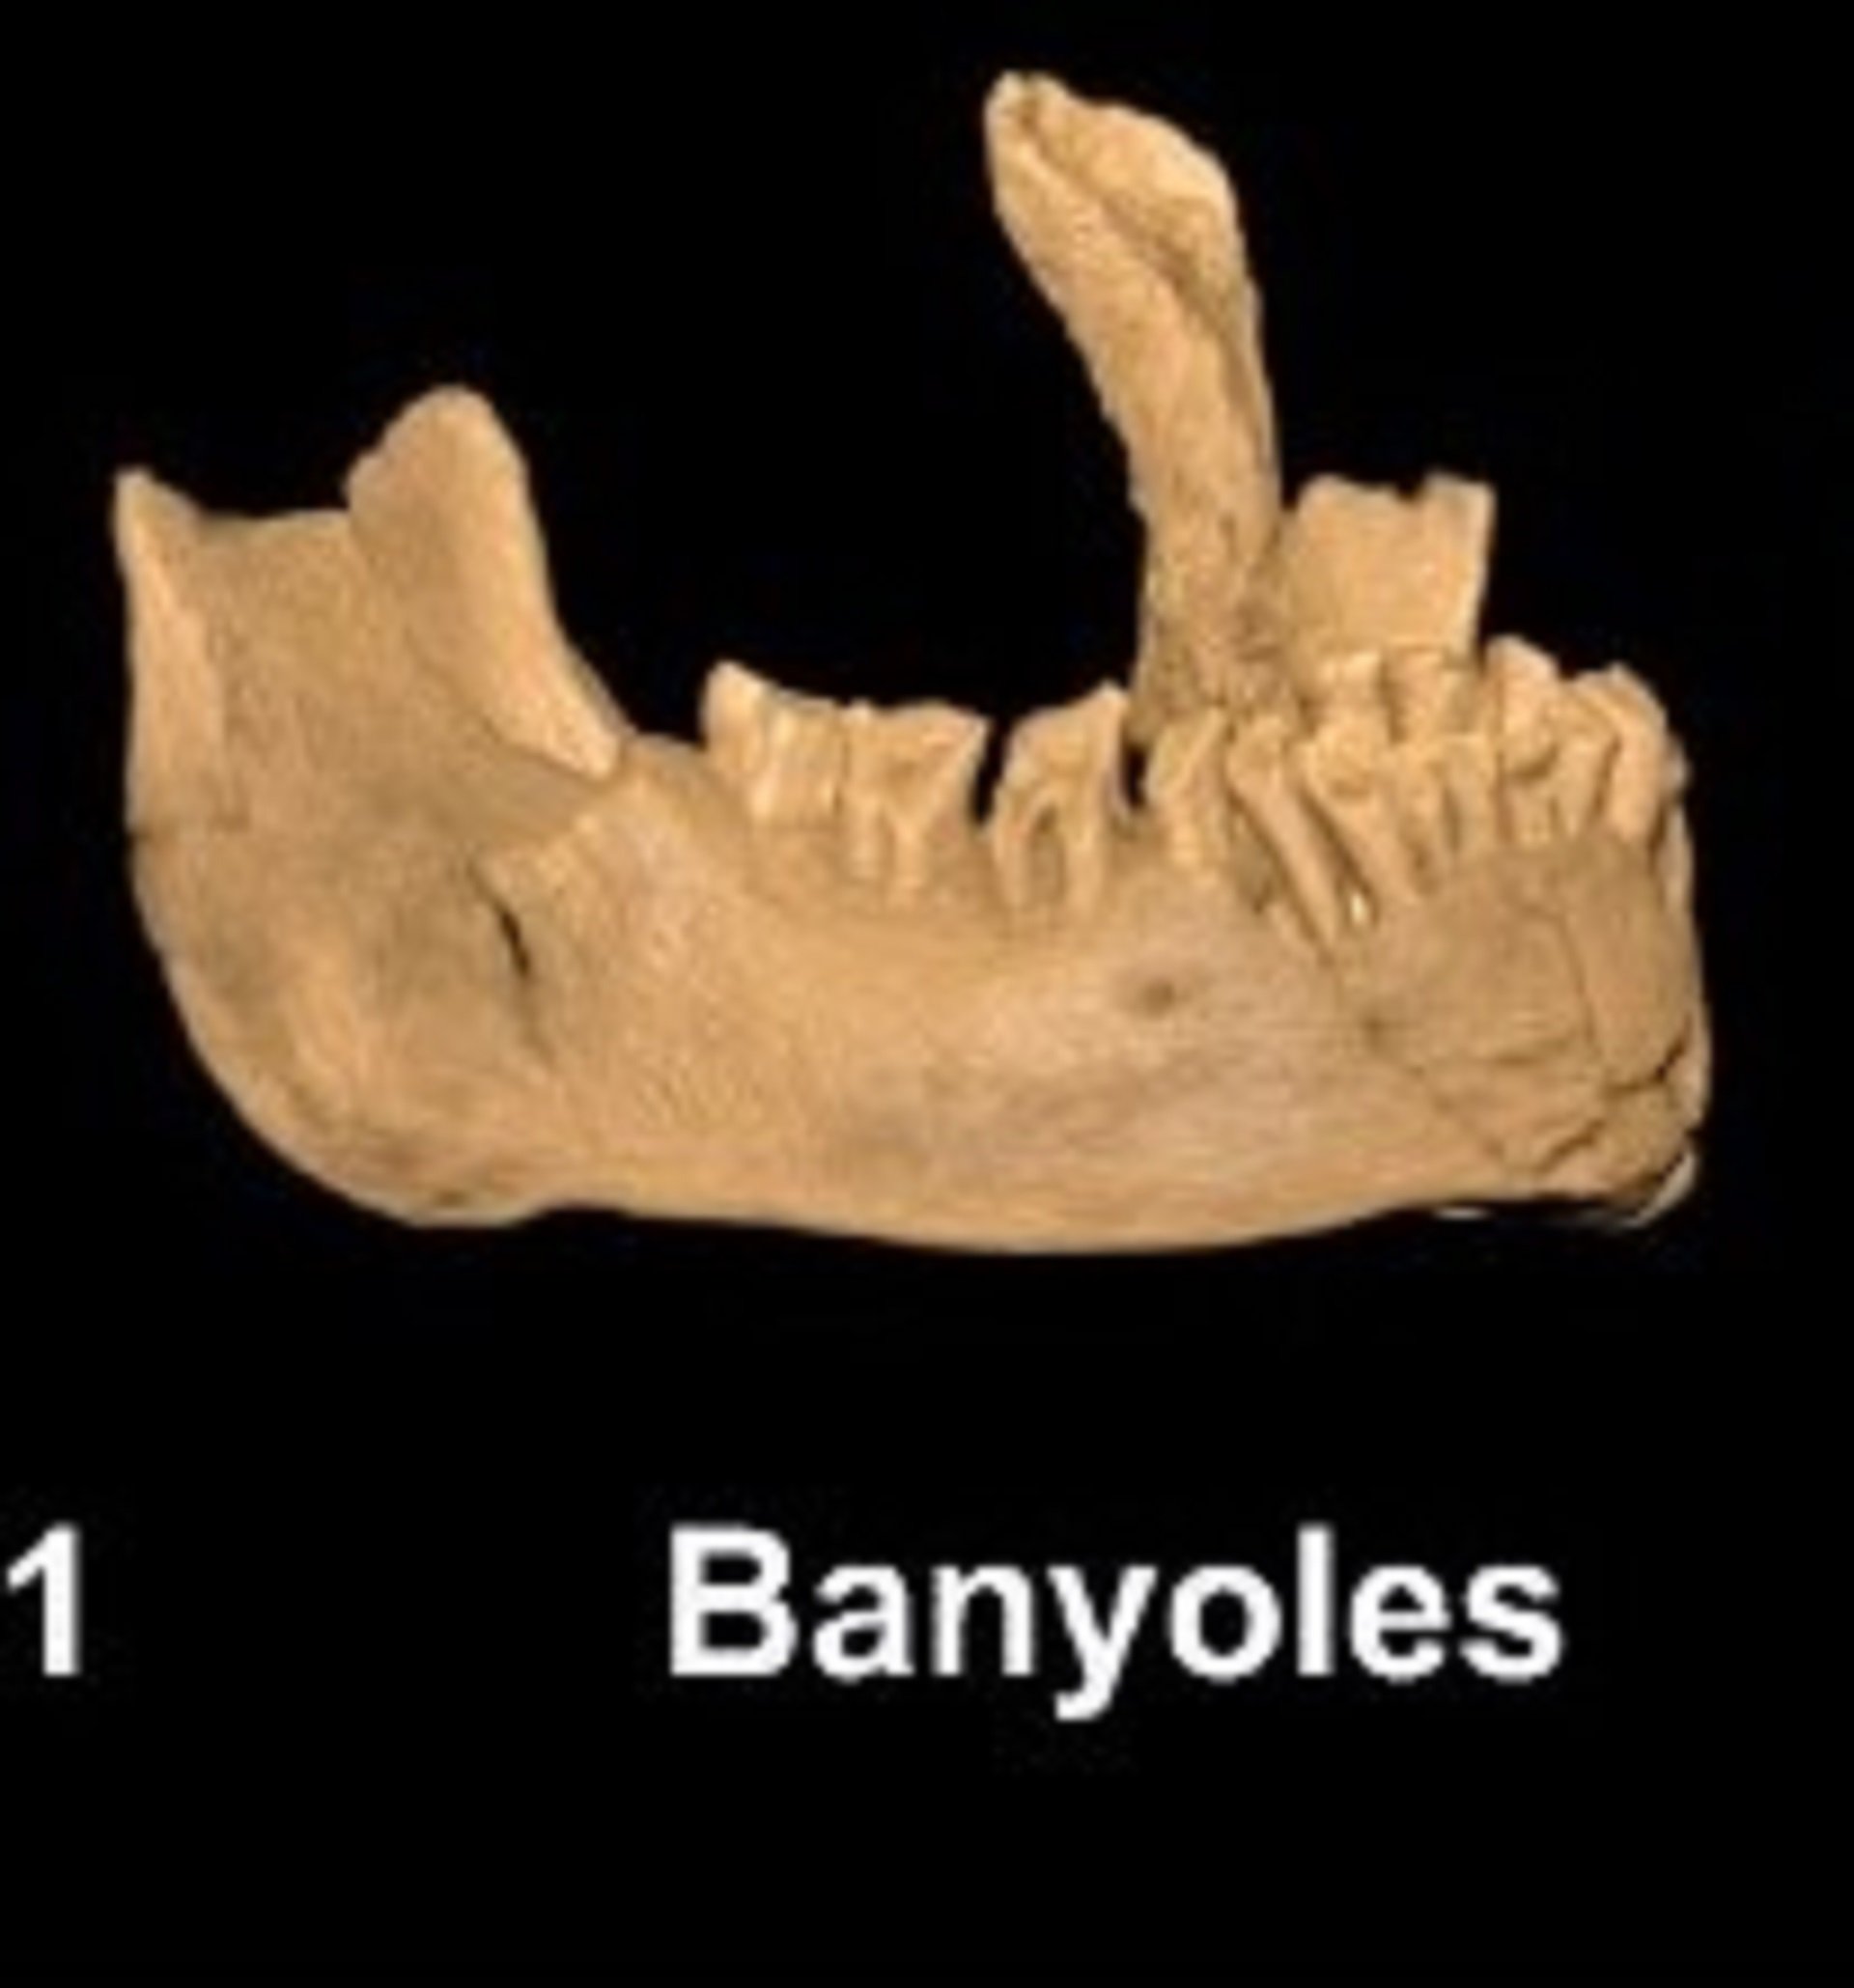 La mandíbula de Banyoles perteneció al primer Homo Sapiens de Europa